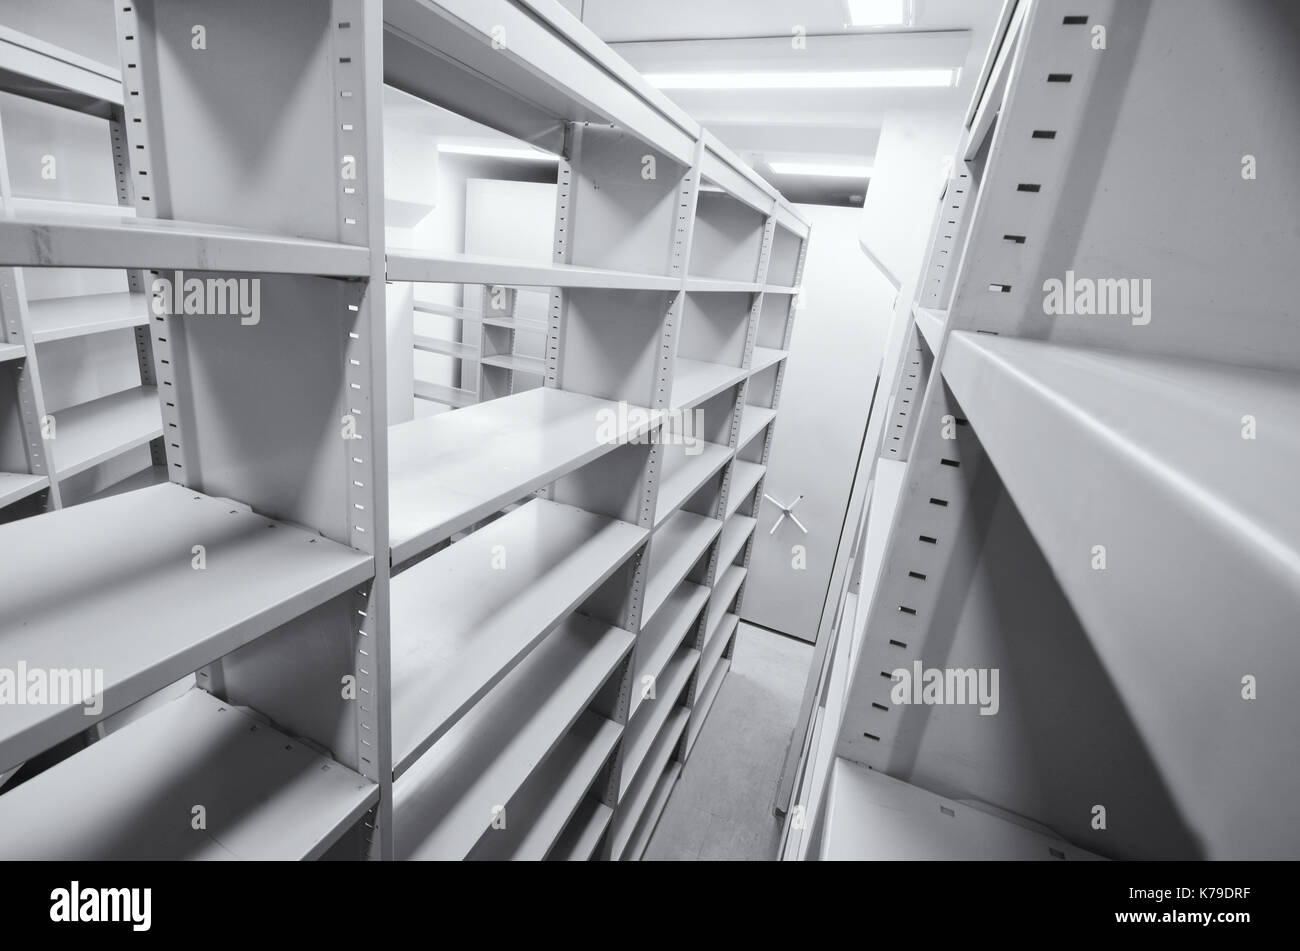 Archivio vuoto delle unità di archiviazione, archivio di laminazione del sistema di storage Foto Stock